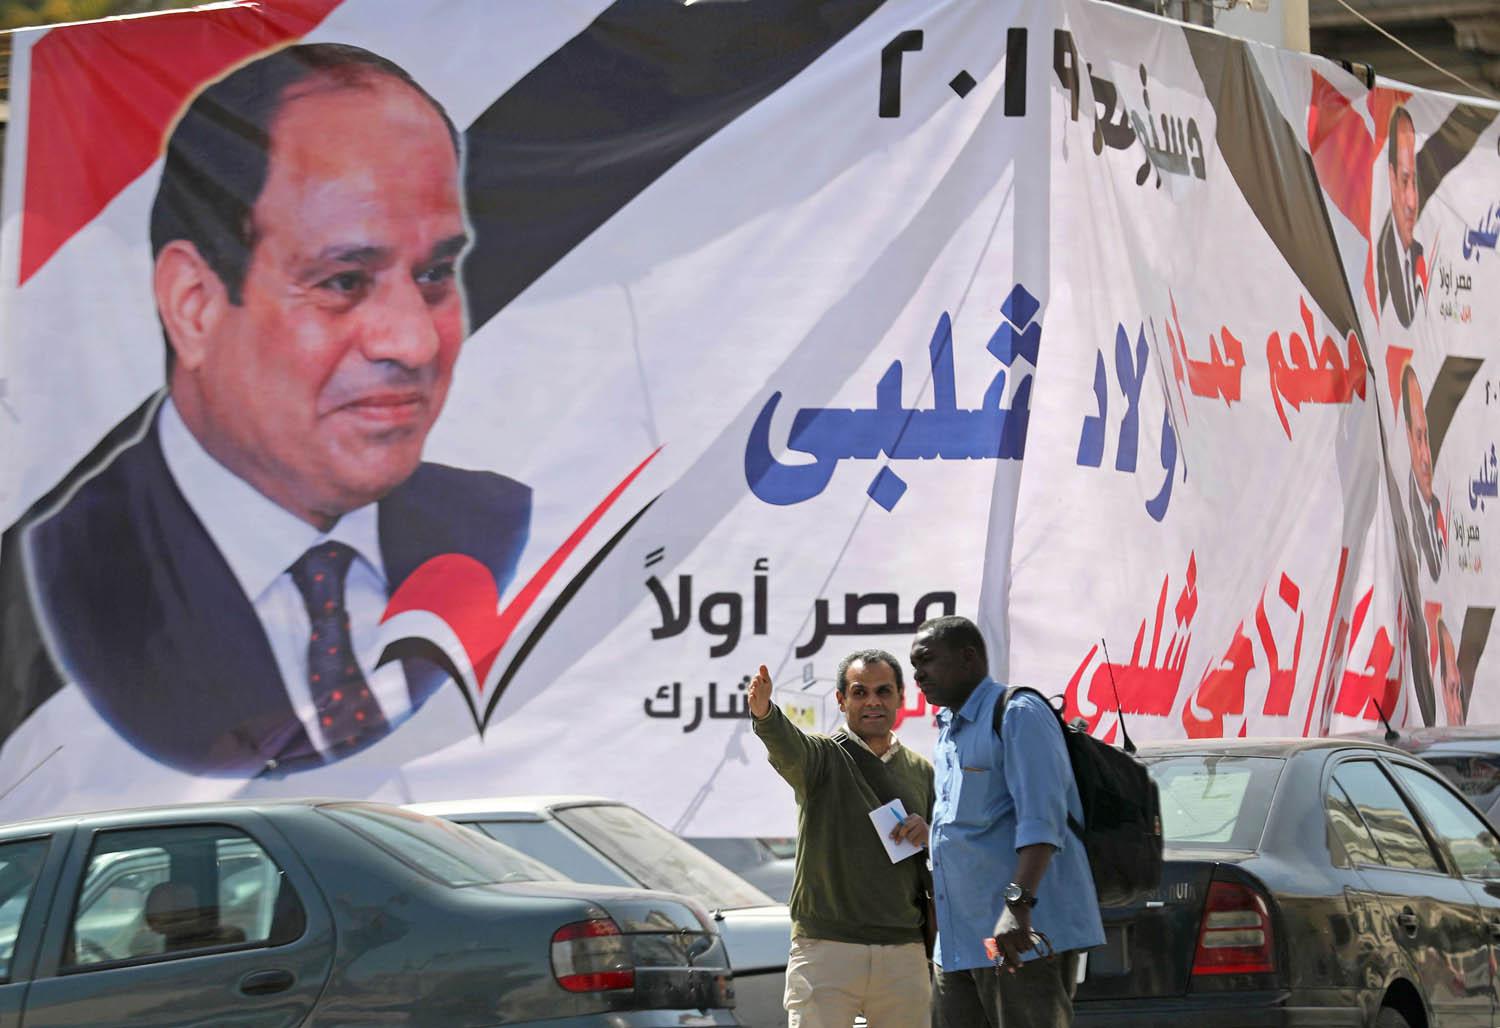 ملصق يحث المصريين على التصويت لصالح التعديل الدستوري